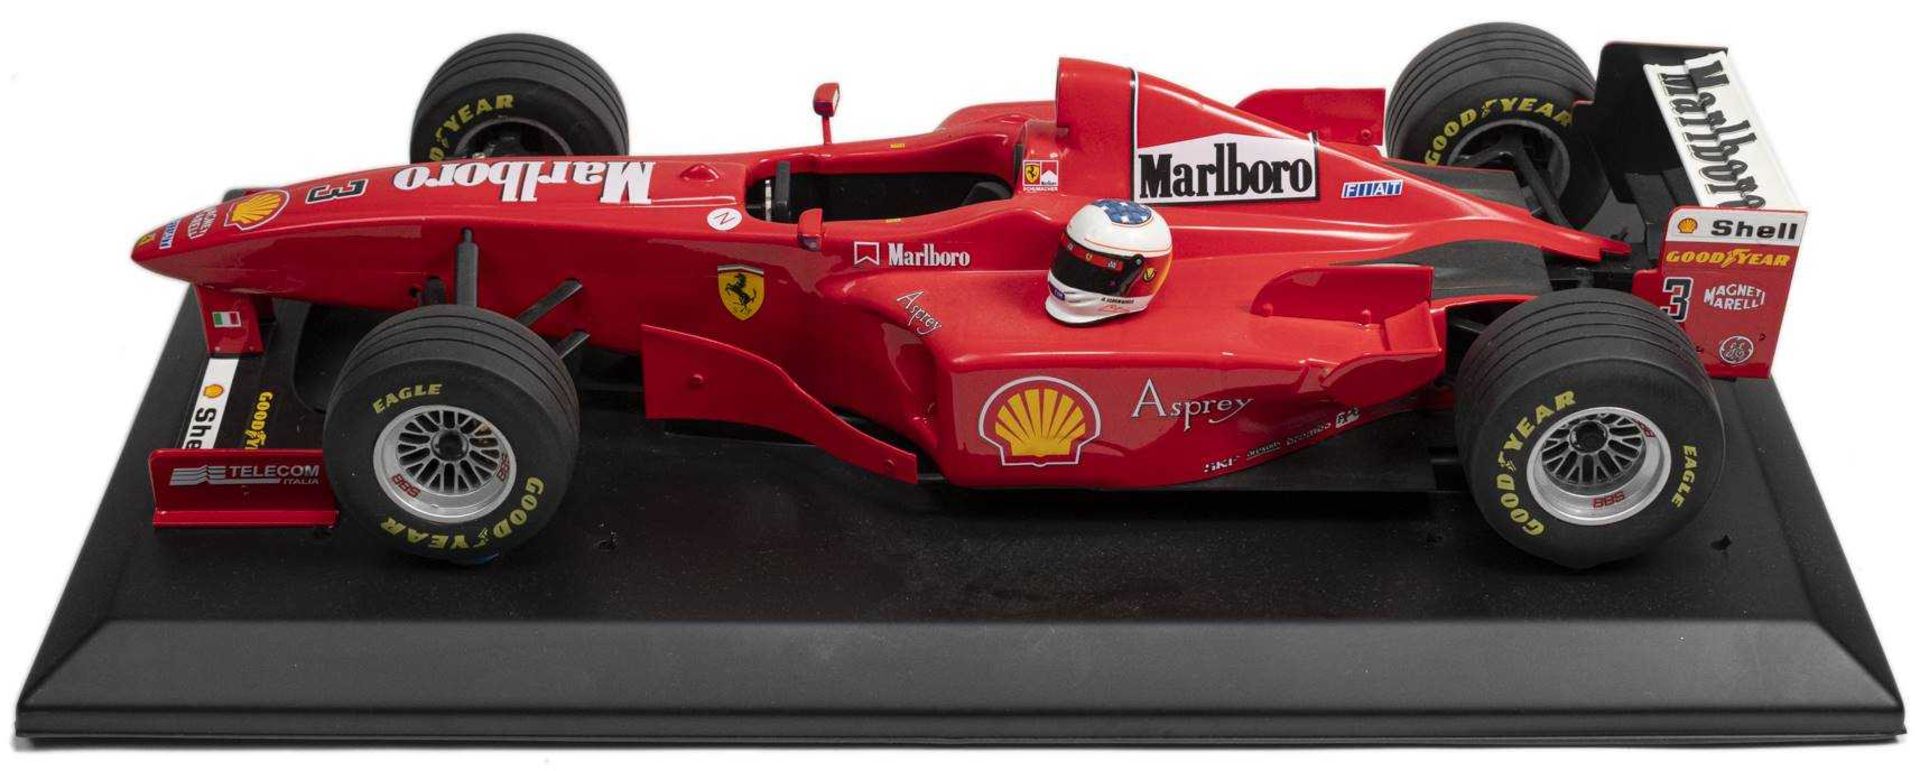 1998, FERRARI F 300 im Großmaßstab 1:8, Fahrer Michael Schumacher, Start Nr. 3, limitierte Auflage 1